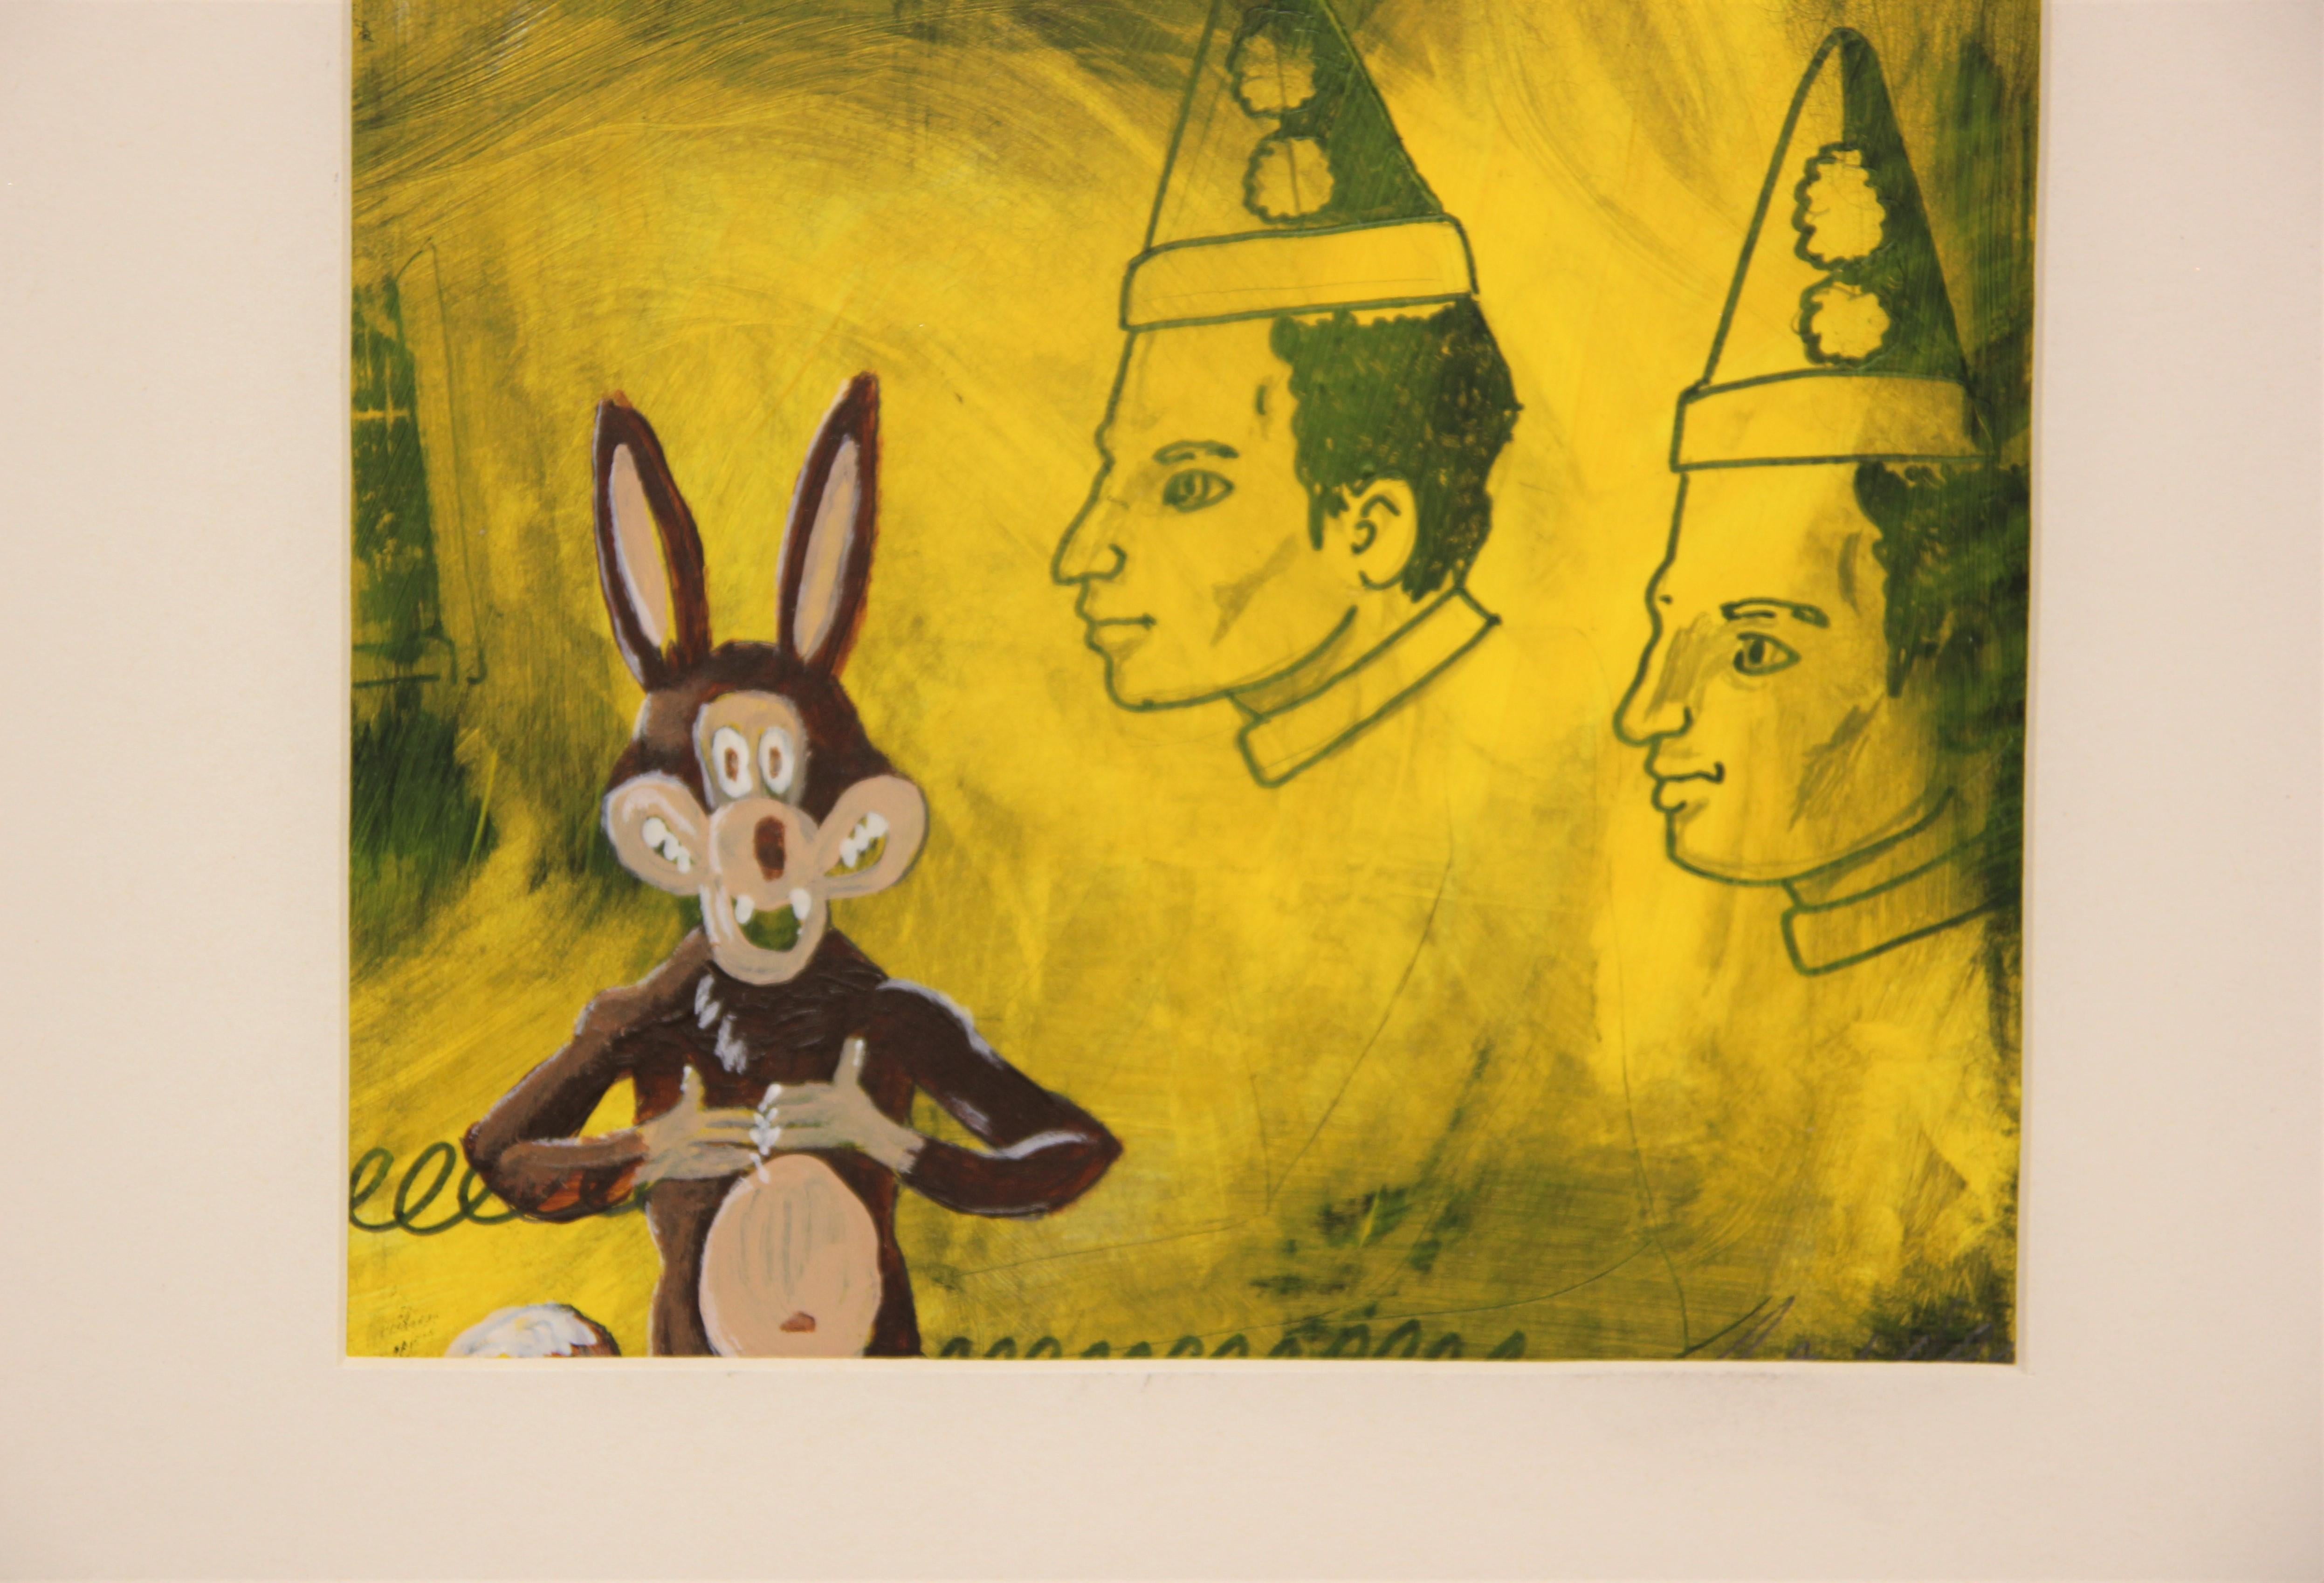 Peinture pop art jaune aux couleurs vives représentant un loup avec des clowns flottant en arrière-plan. Le personnage du loup n'est pas sans rappeler le personnage classique de Looney Toons, Wile E. Coyote. Signé et daté par l'artiste au dos.